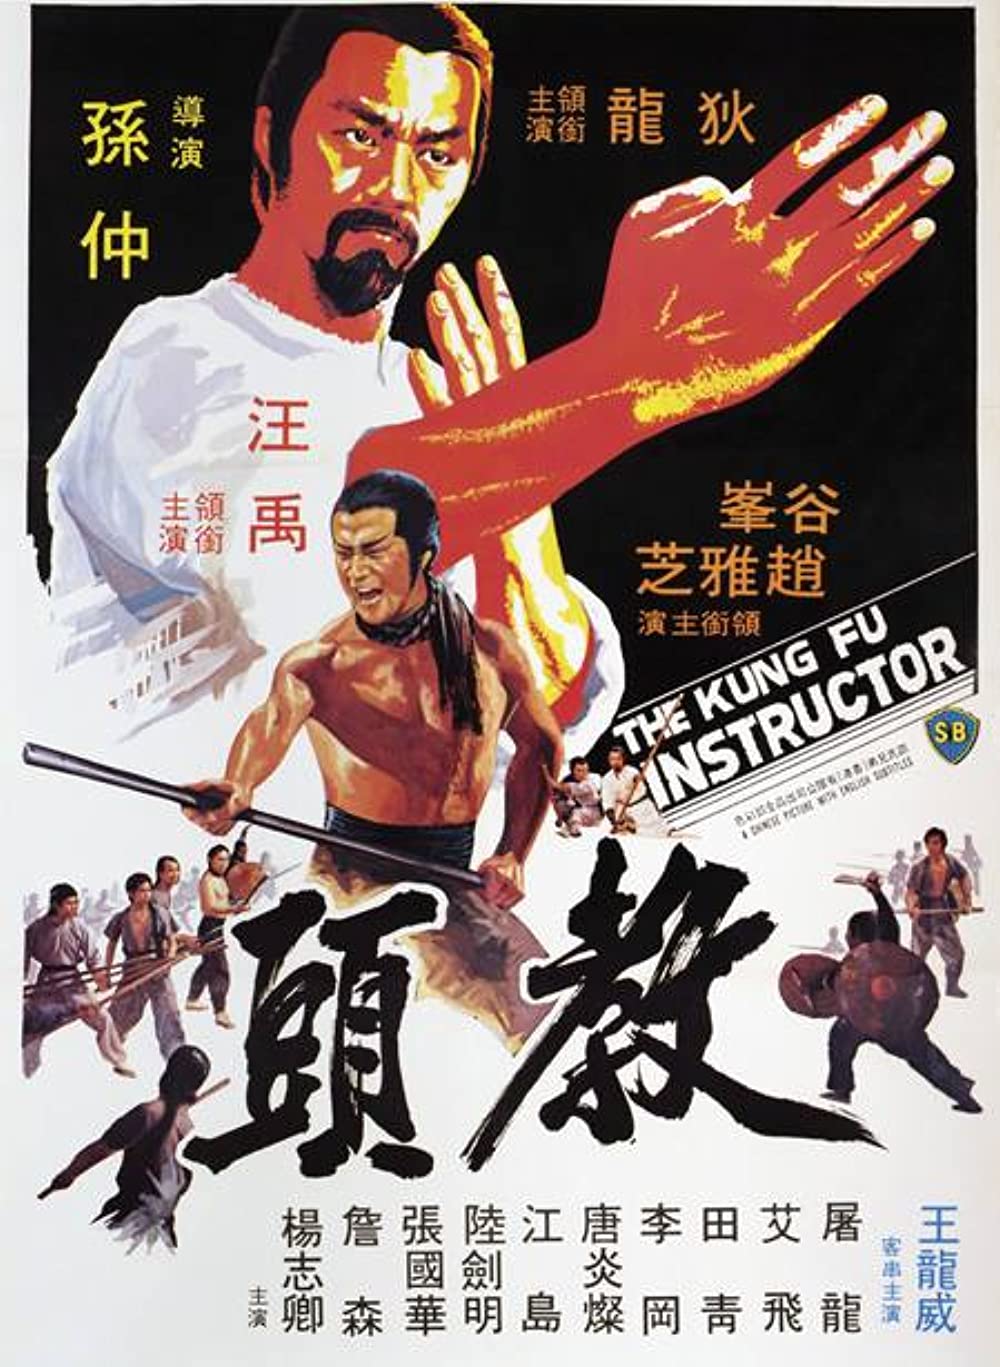 ดูหนังออนไลน์ฟรี The Kung Fu Instructor (1979) ฤทธิ์แค้นเจ้ากระบองทอง